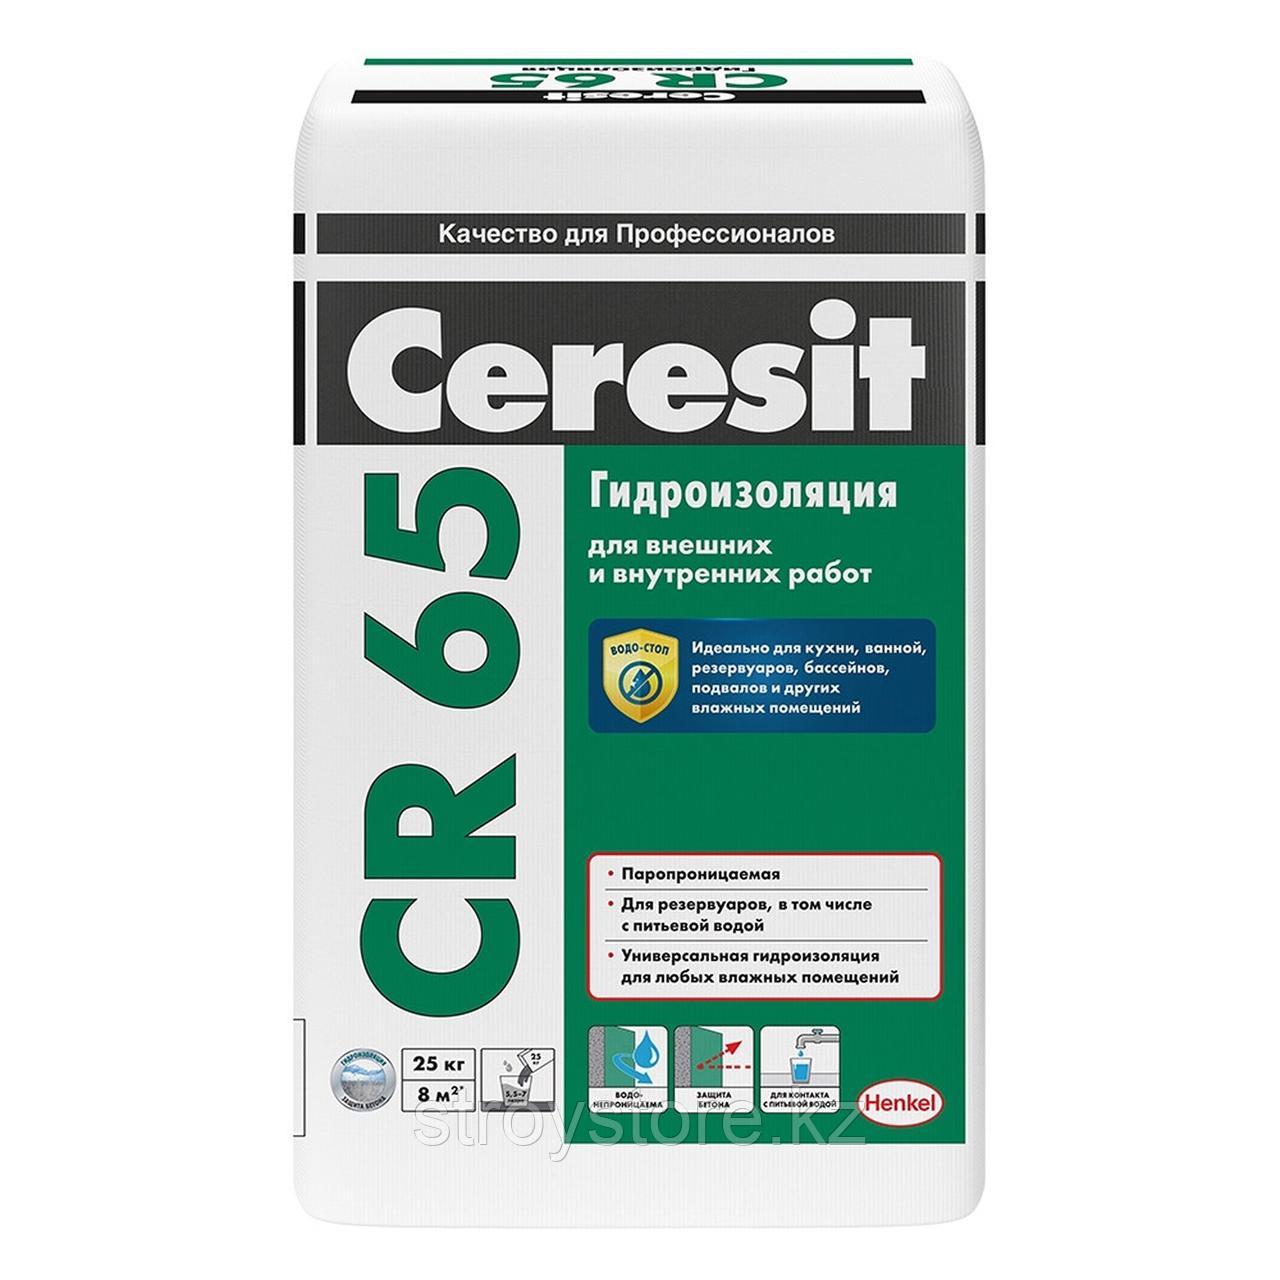 Цементная гидроизоляционная масса Ceresit CR 65, 25 кг